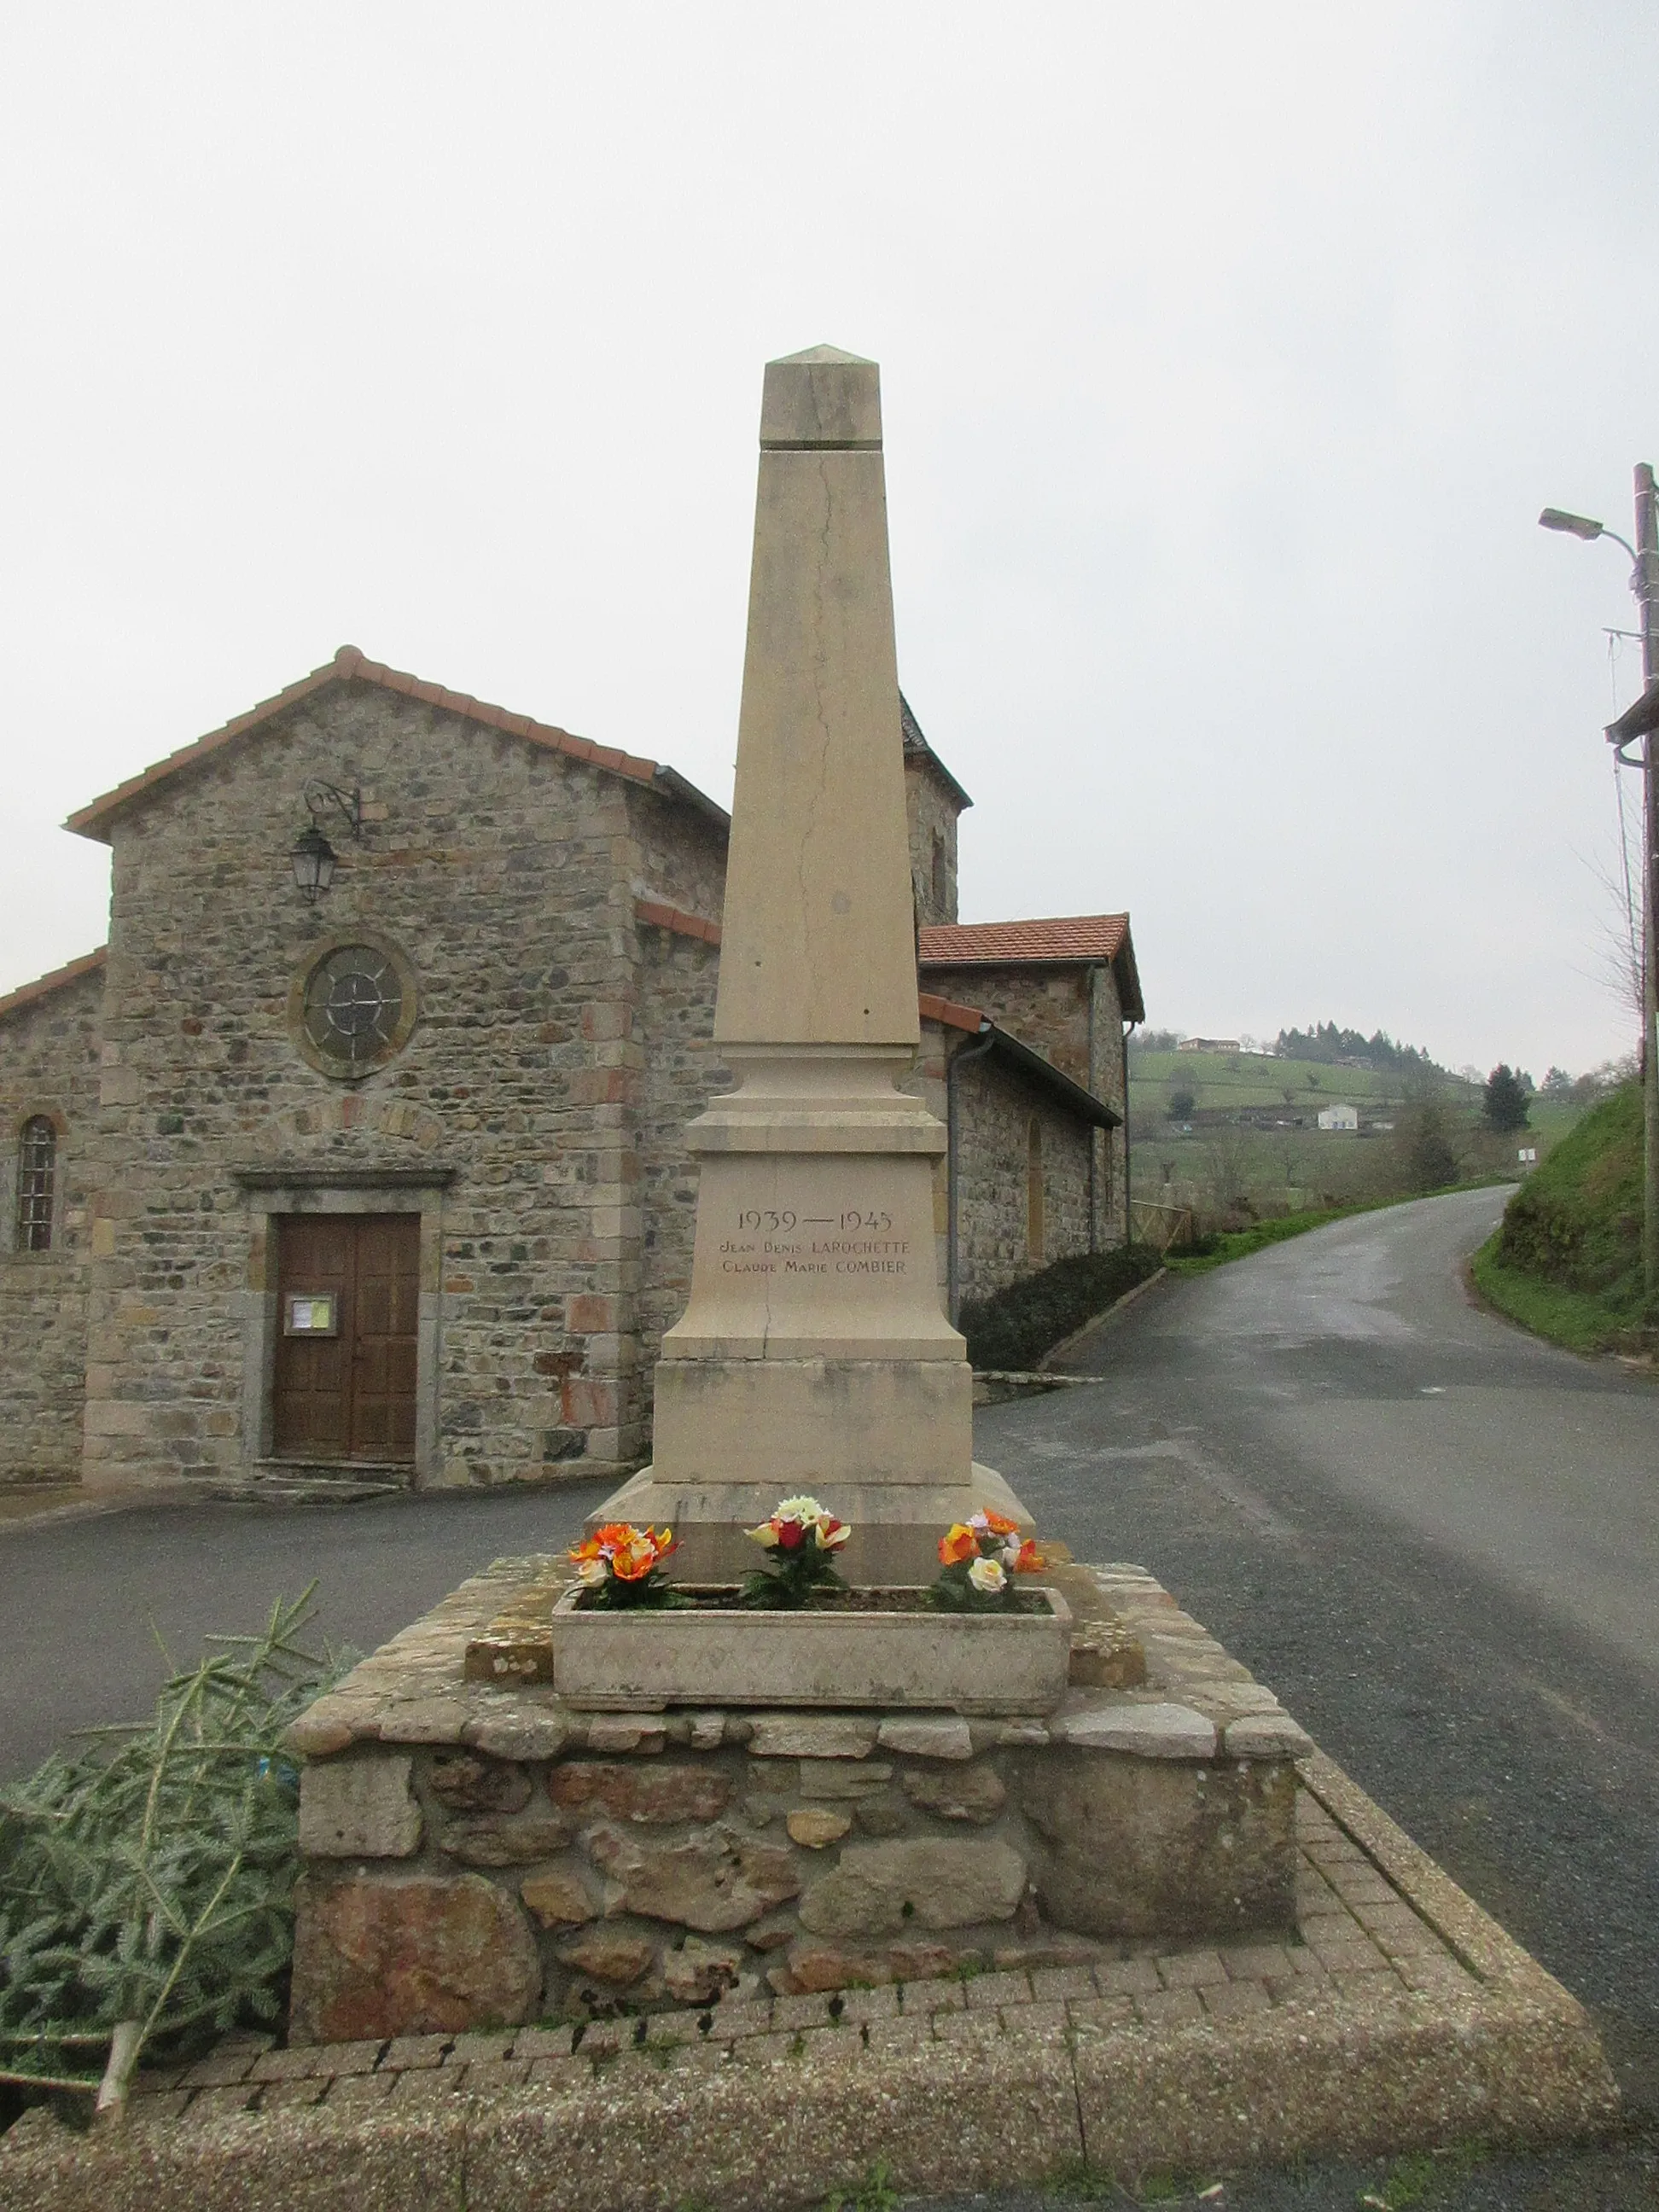 Photo showing: Monument aux morts de Trades.